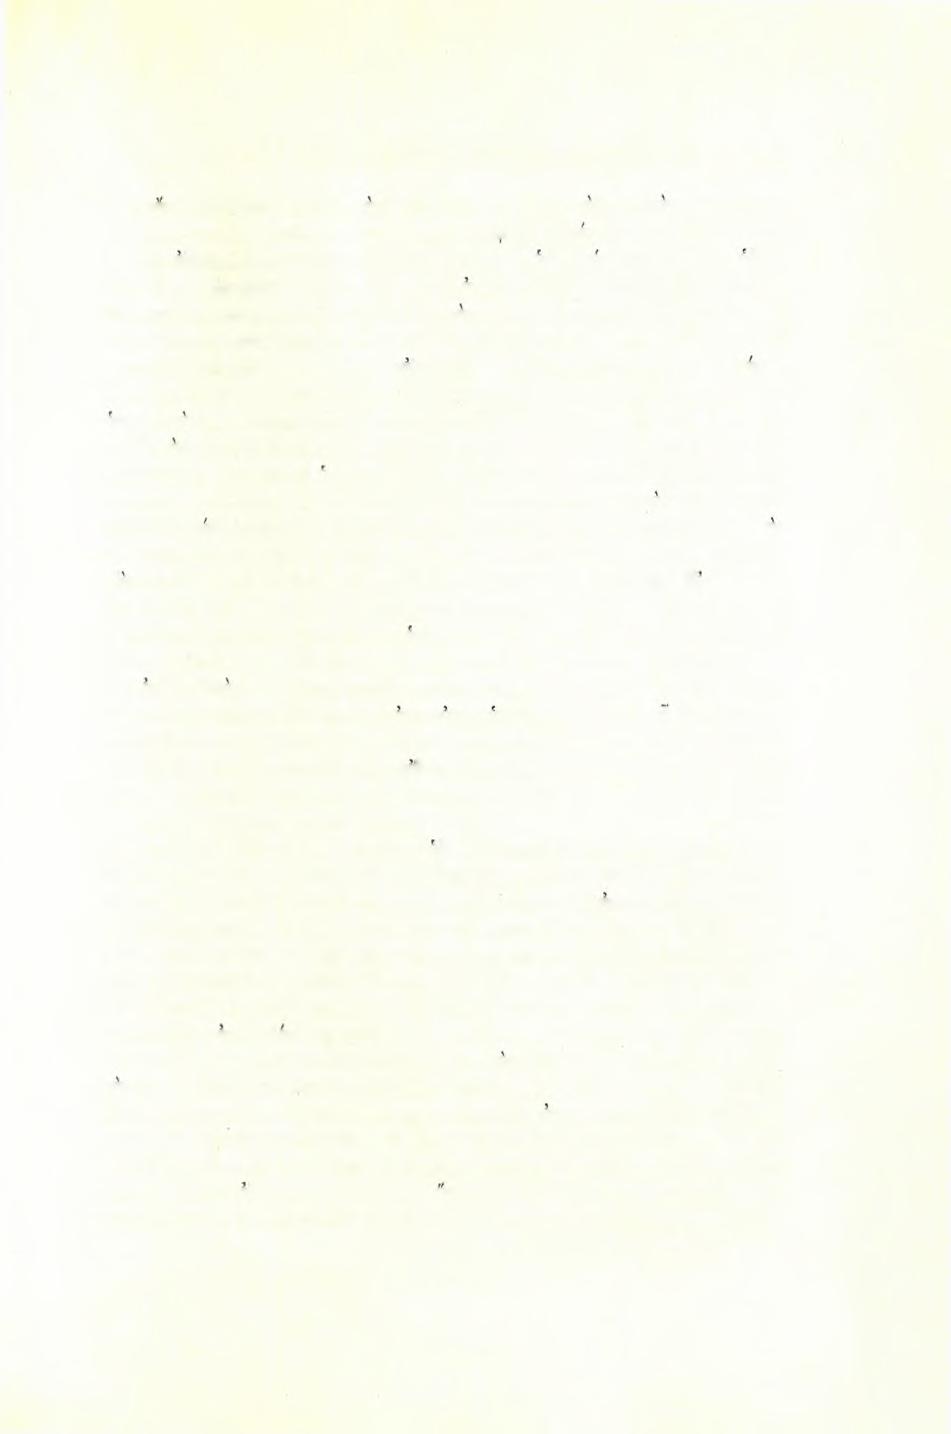 Στυλιανού Πελεκανίδη : Άνασκαφή Οκταγώνου Φιλίππων 75 και οίνου (πίν. 38α).